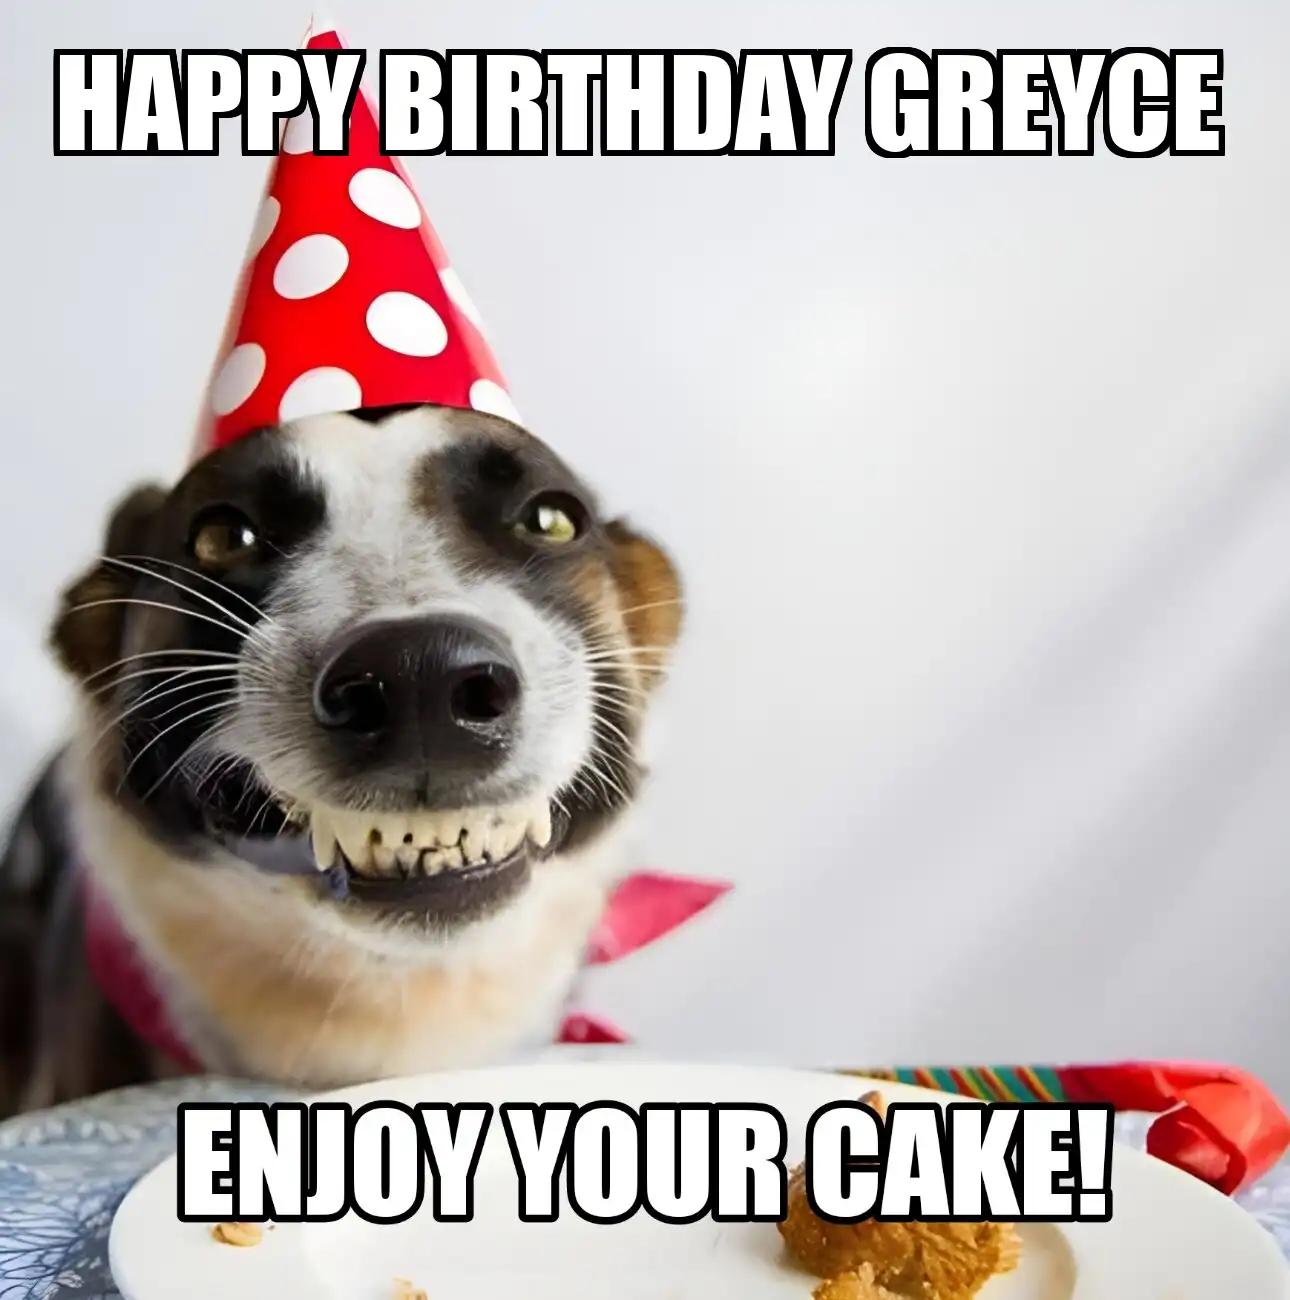 Happy Birthday Greyce Enjoy Your Cake Dog Meme